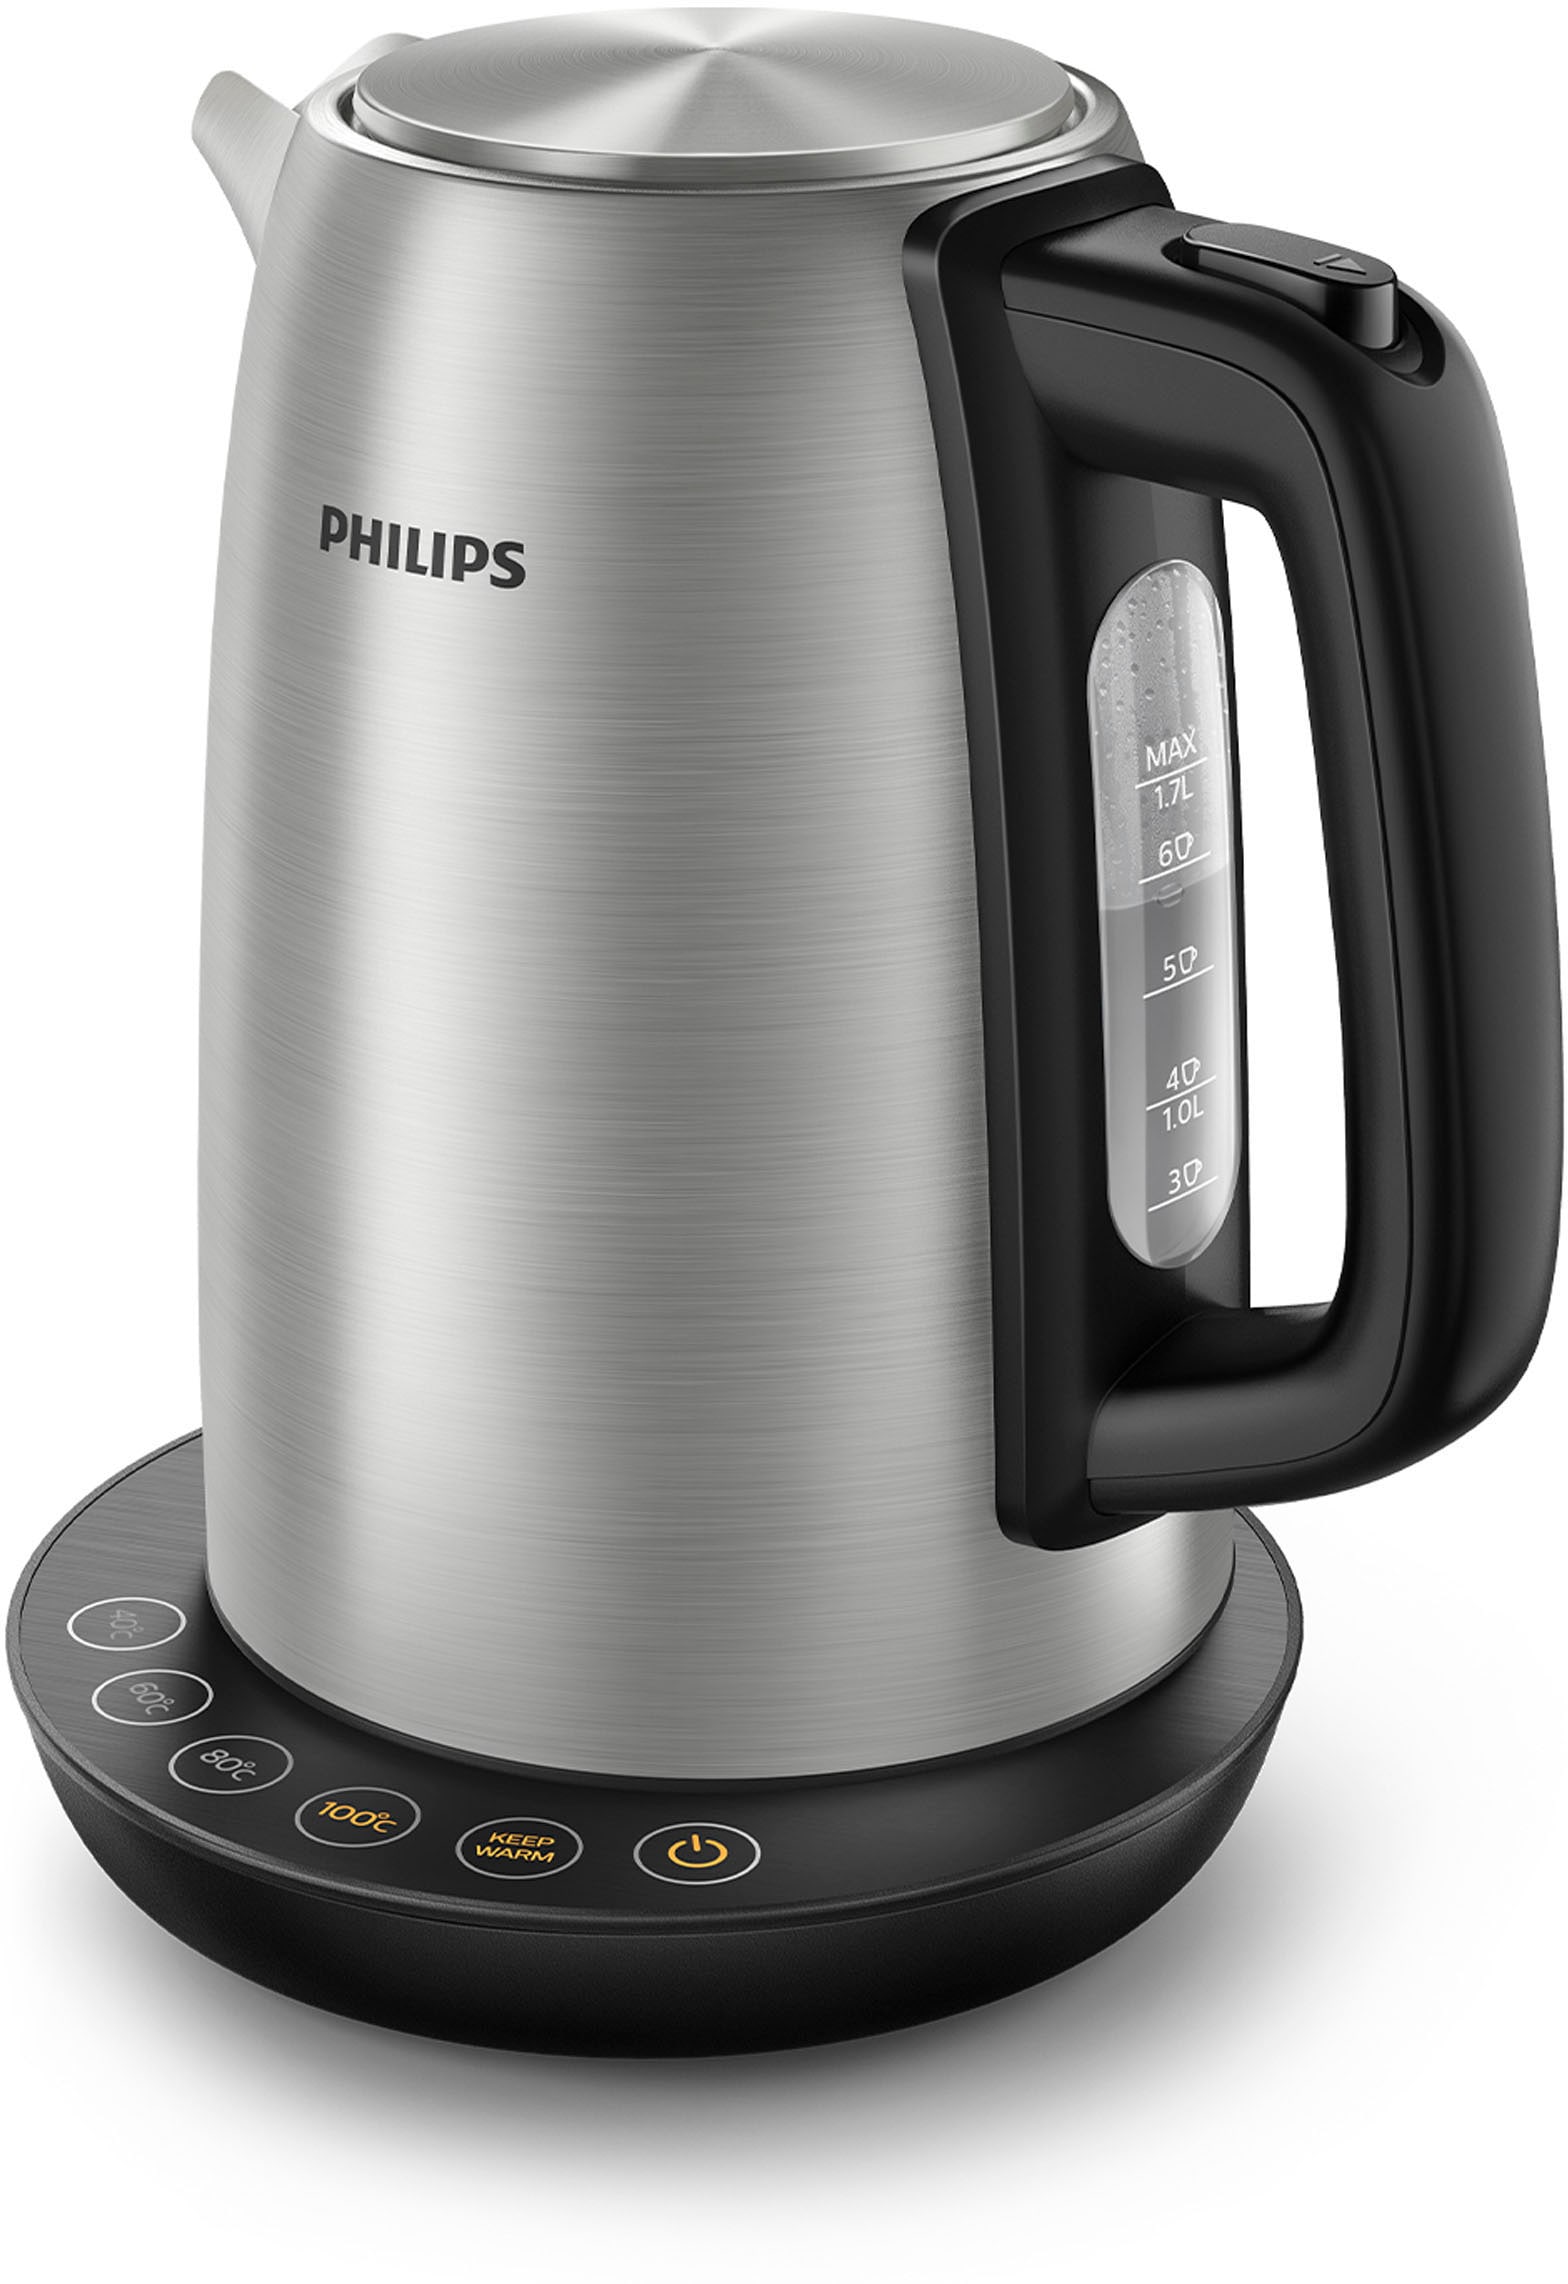 Philips Wasserkocher, HD9359/90, 1,7 Liter, Watt kaufen 2200 Raten auf